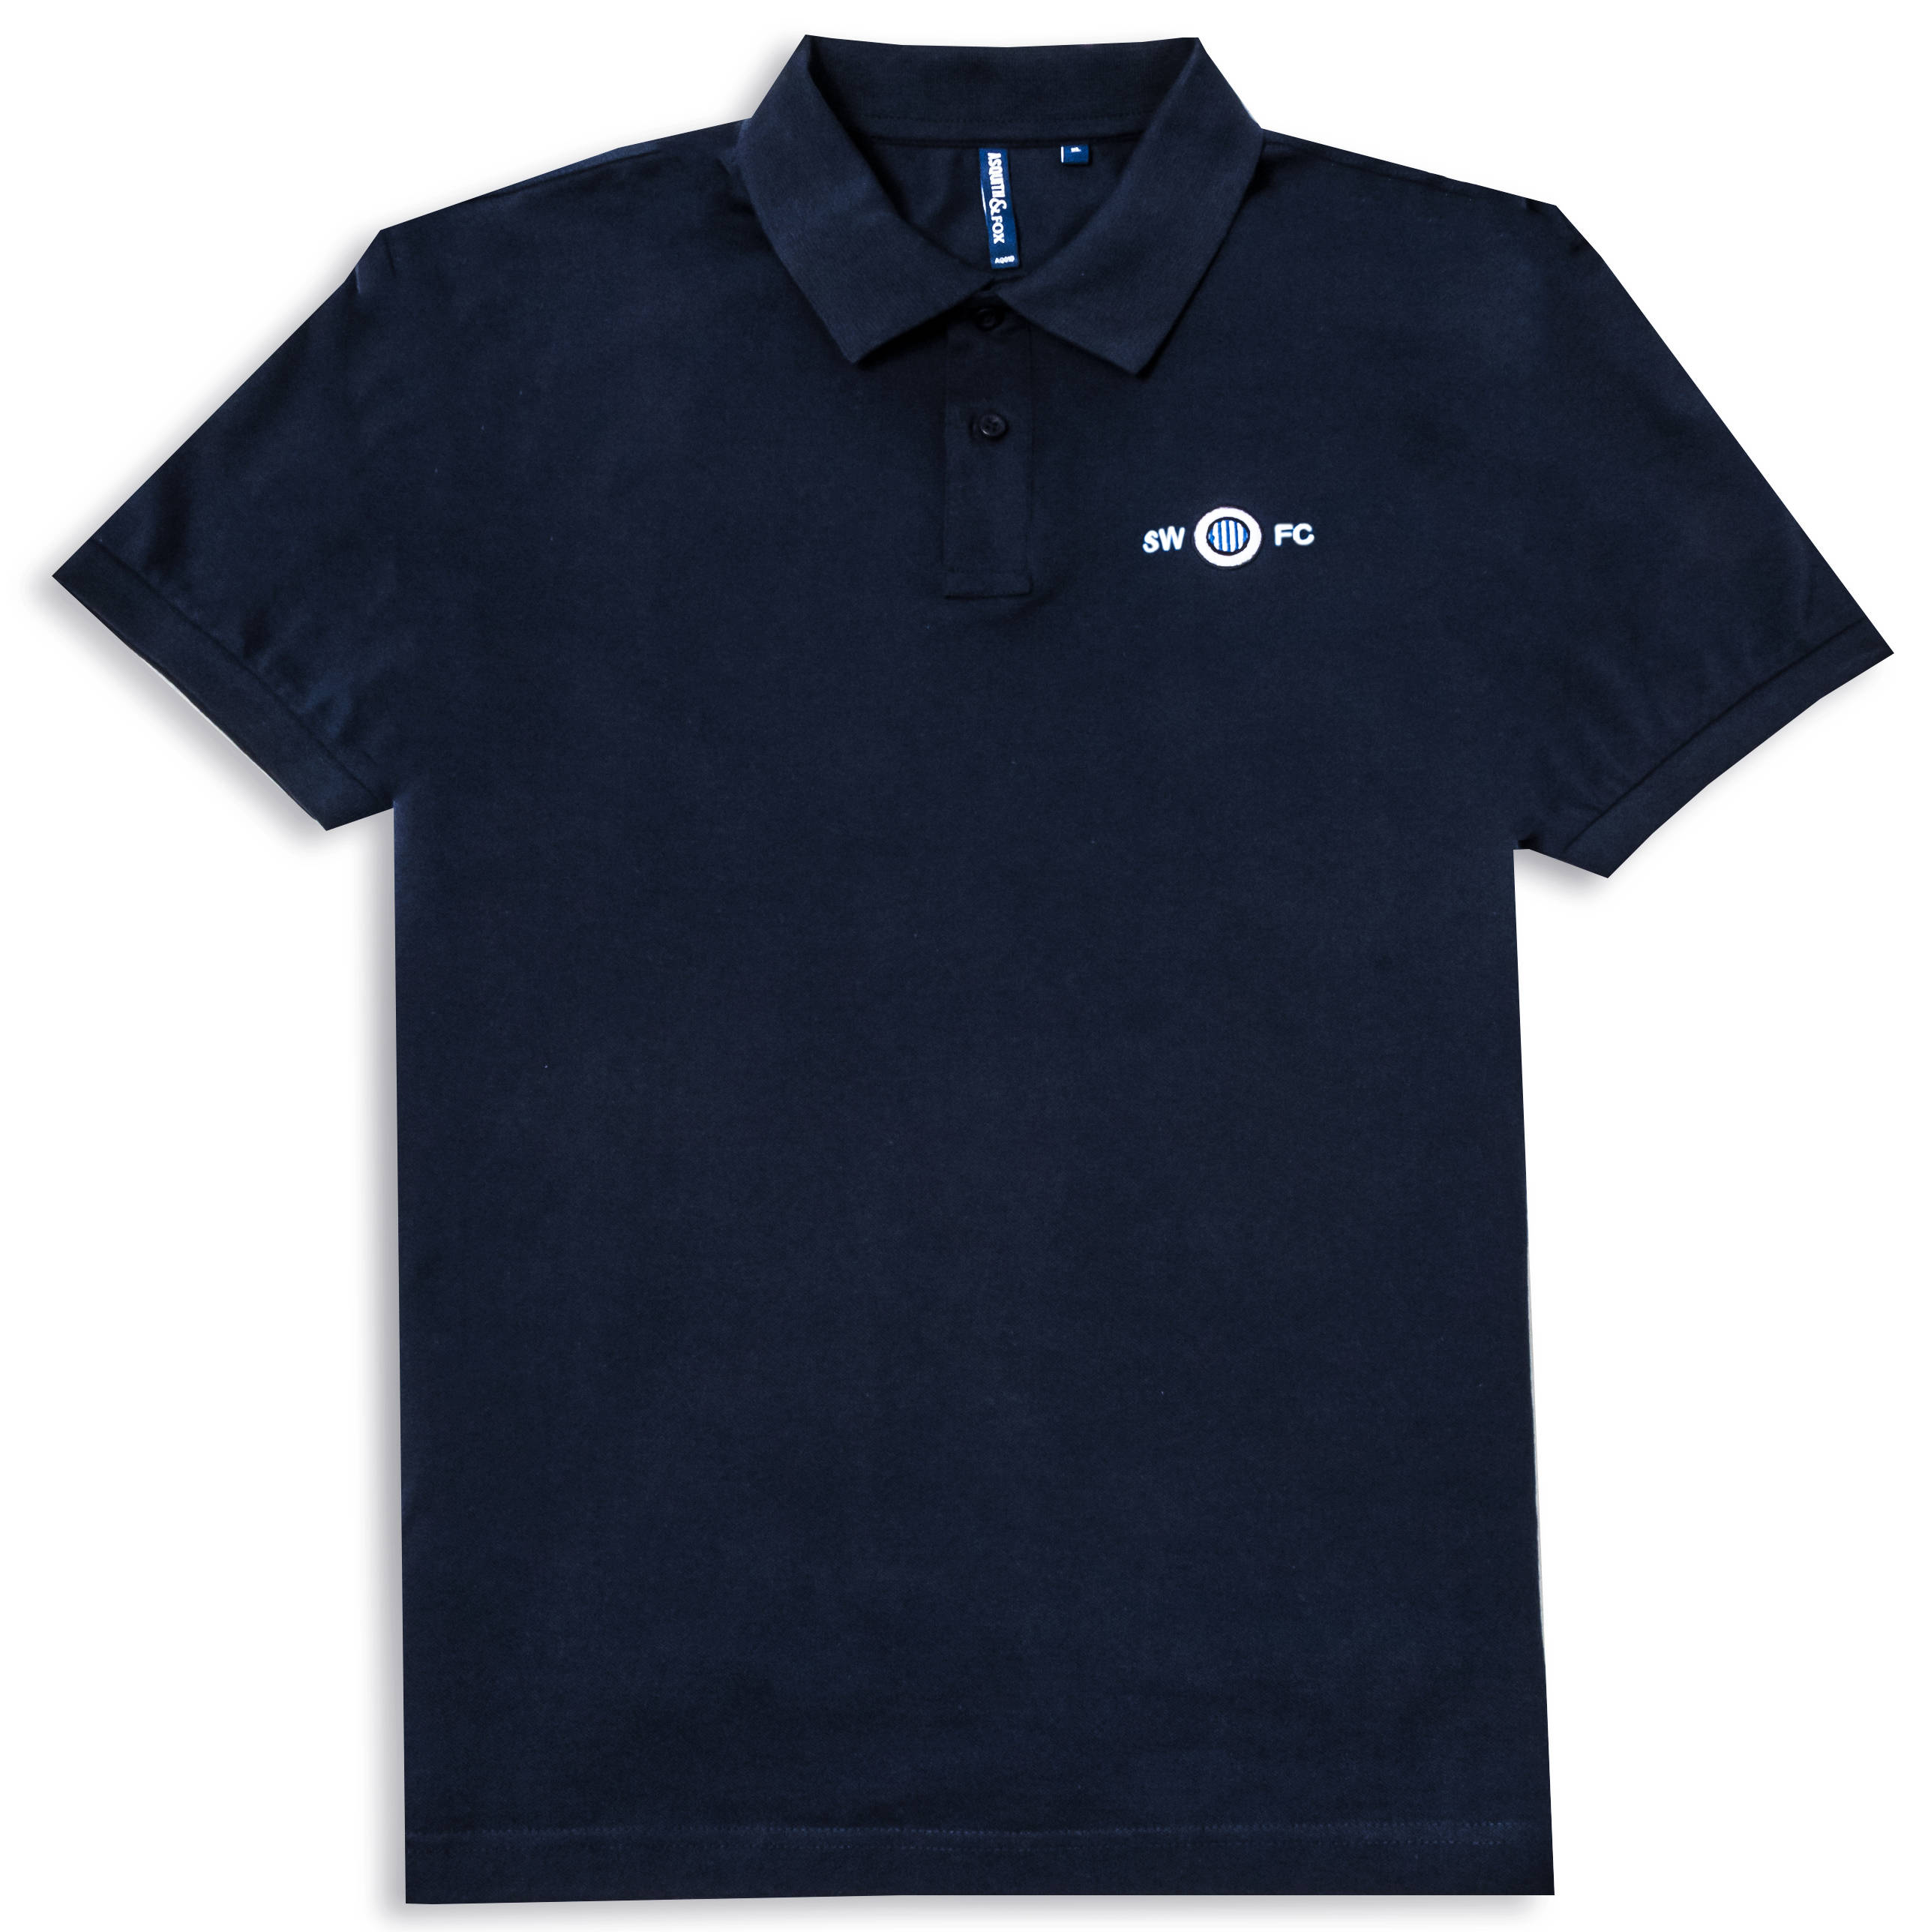 Navy Blue Sheffield Wednesday Inspired Polo Shirt - Etsy UK